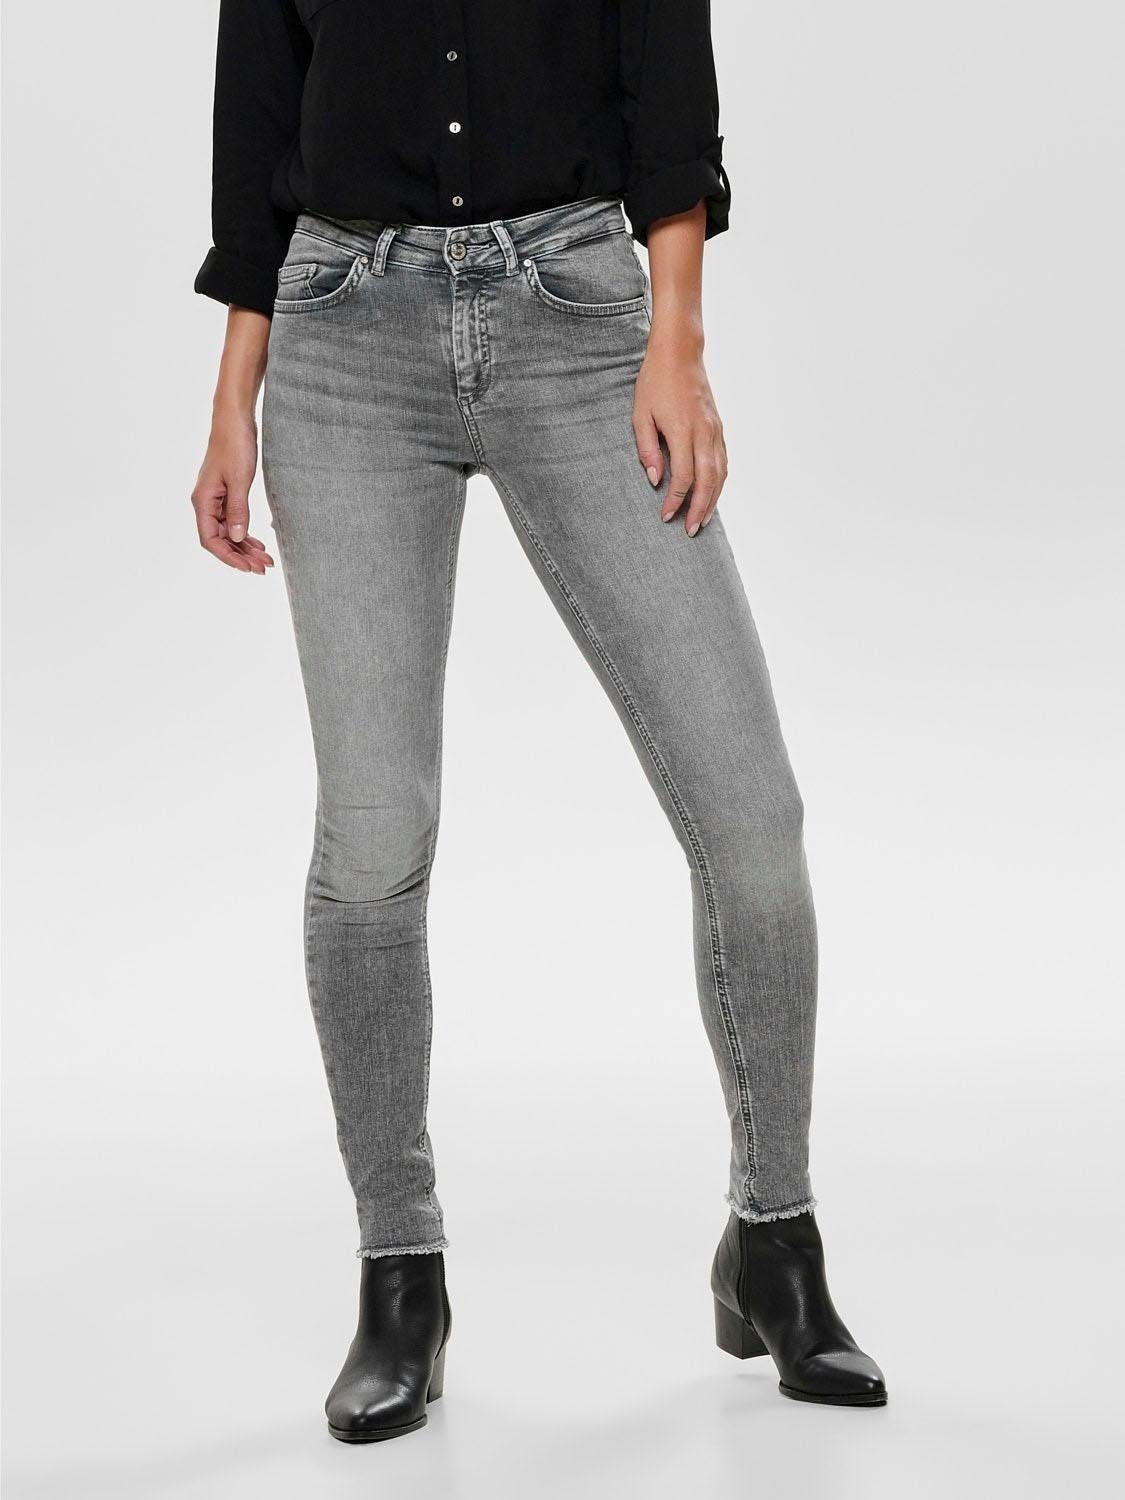 Bund mit für | online Graue kaufen Damen Jeans niedrigem OTTO